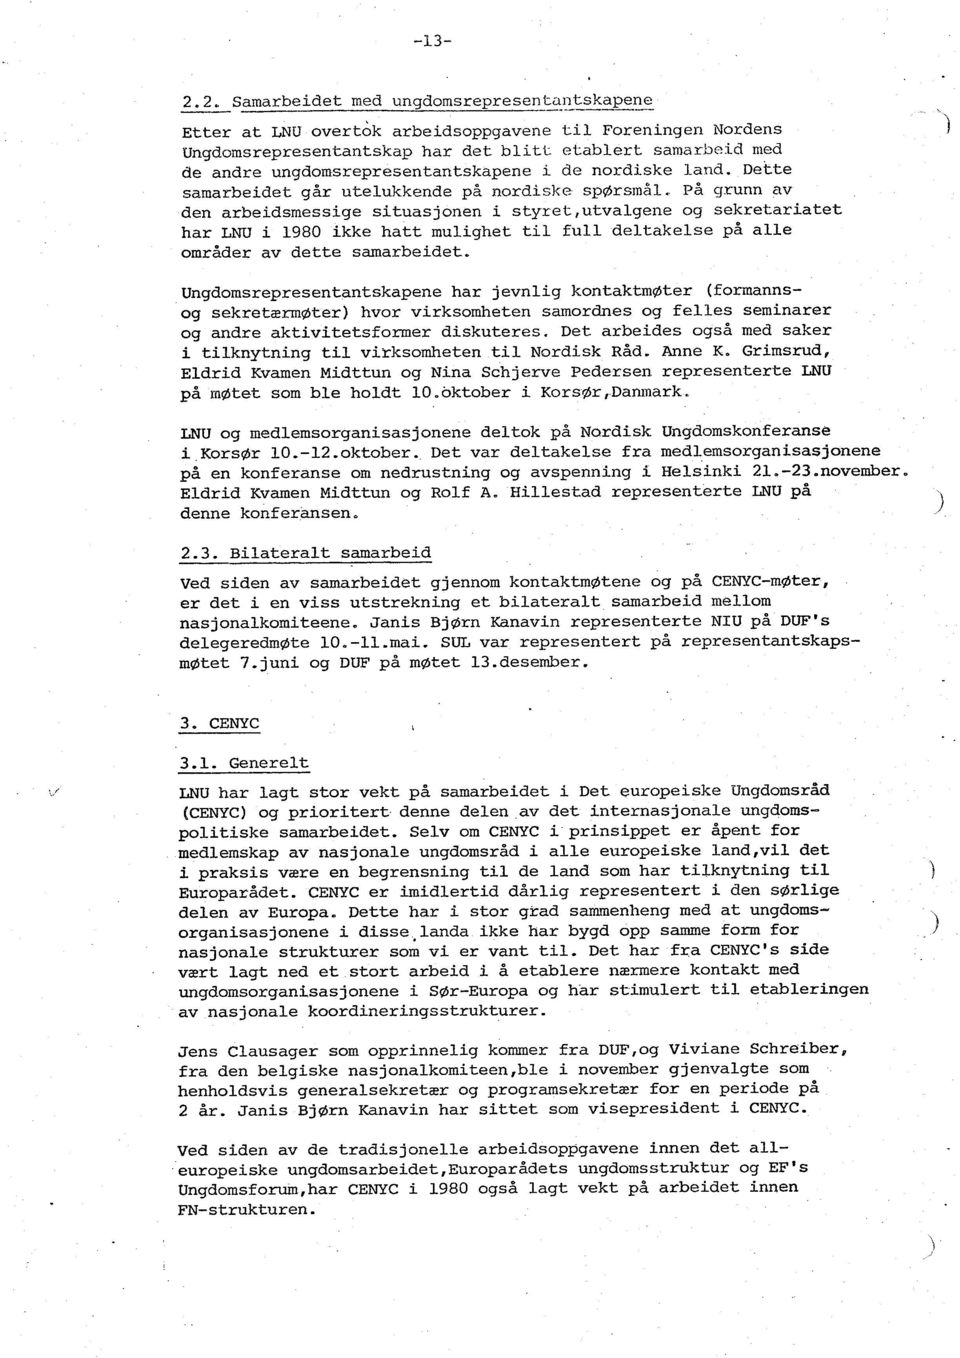 .utvalgene og sekretariatet har LNU i 1980 ikke hatt mulighet til full deltakelse på alle områder av dette samarbeidet.